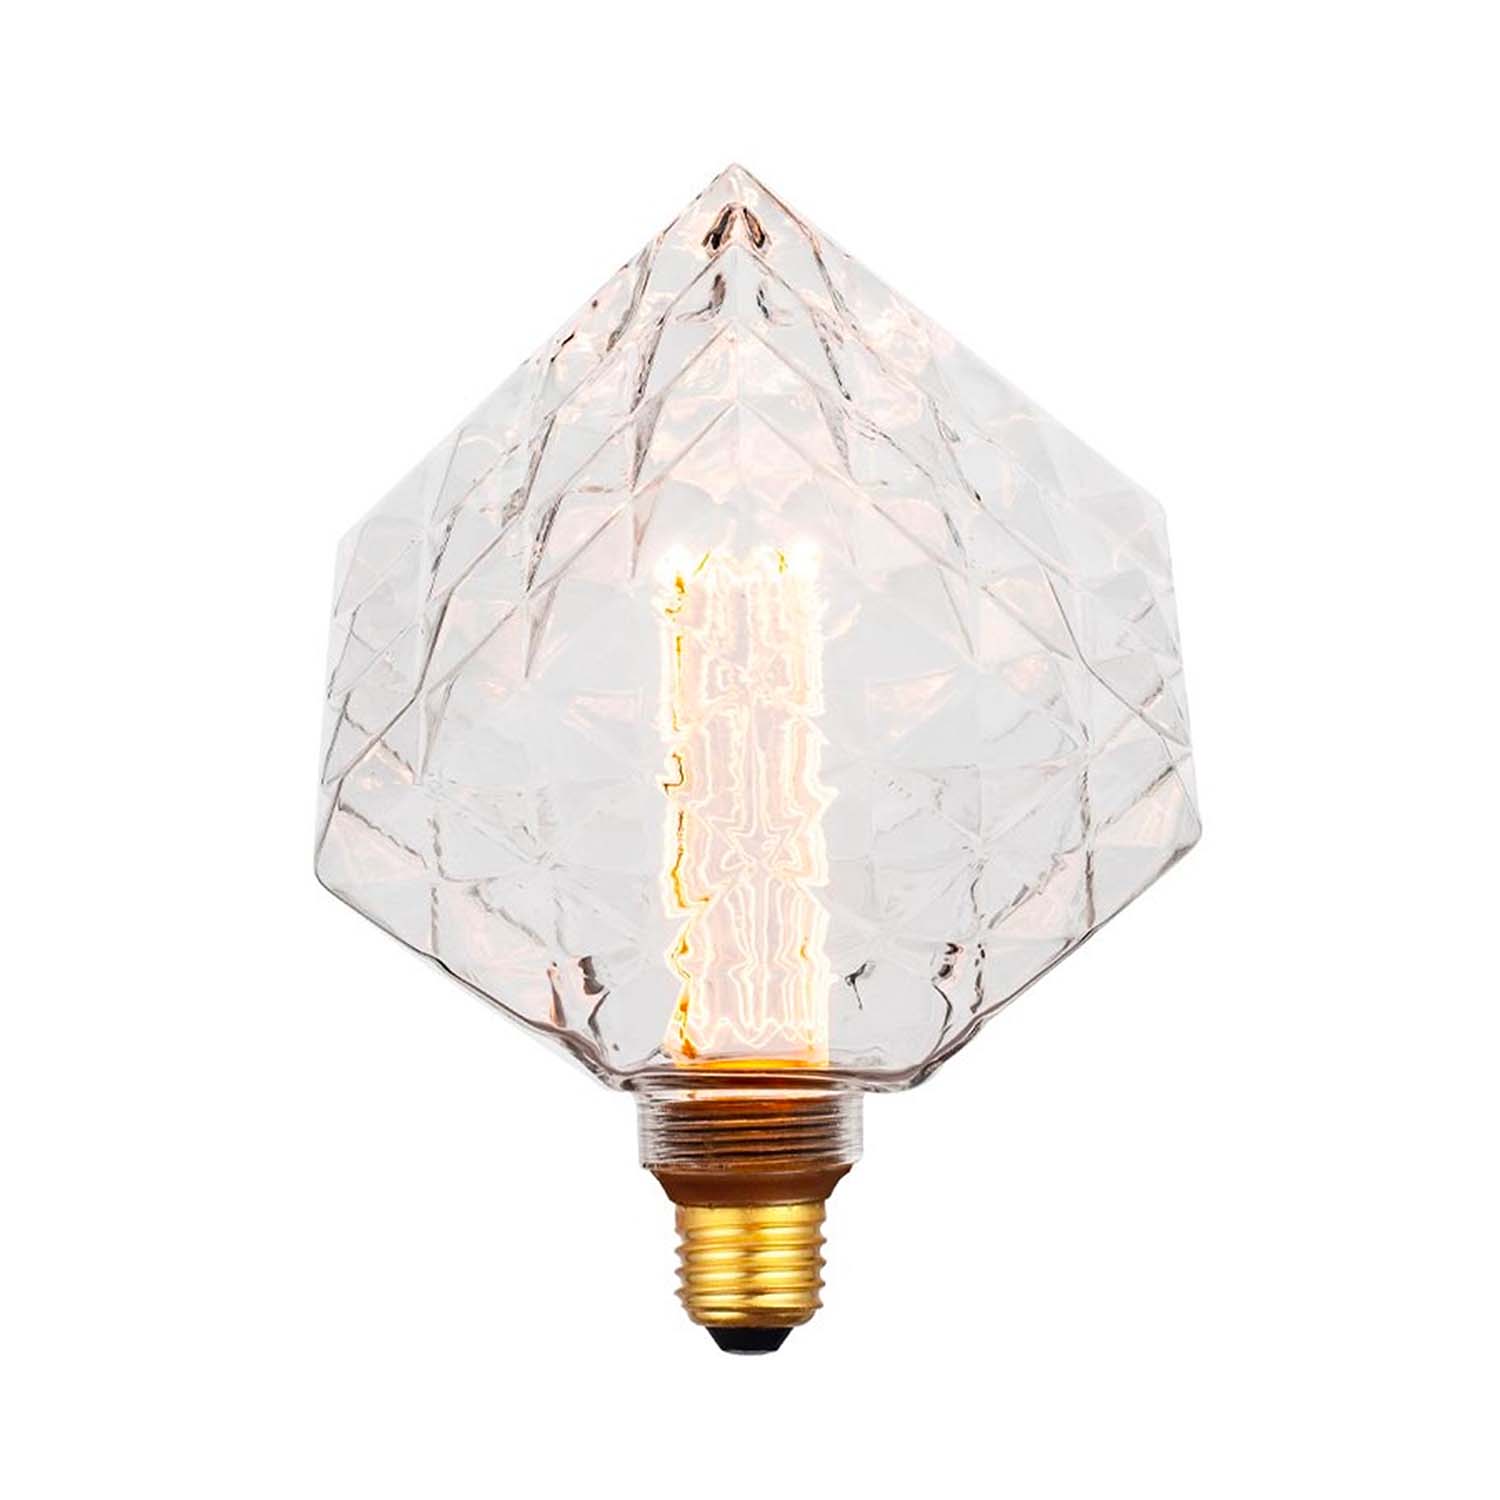 Facet Square - E27 transparent faceted LED bulb